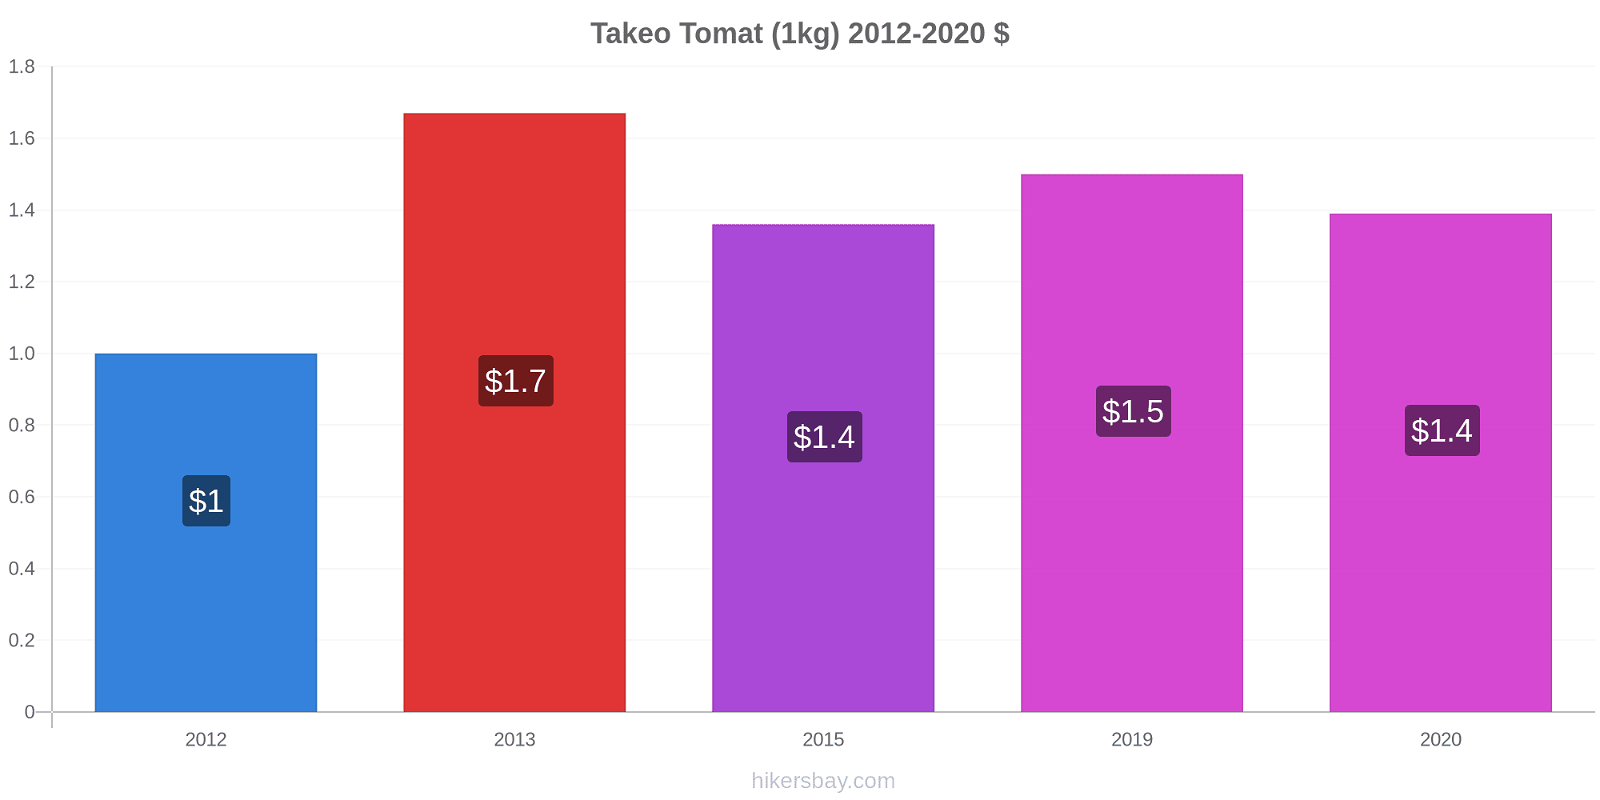 Takeo prisförändringar Tomat (1kg) hikersbay.com